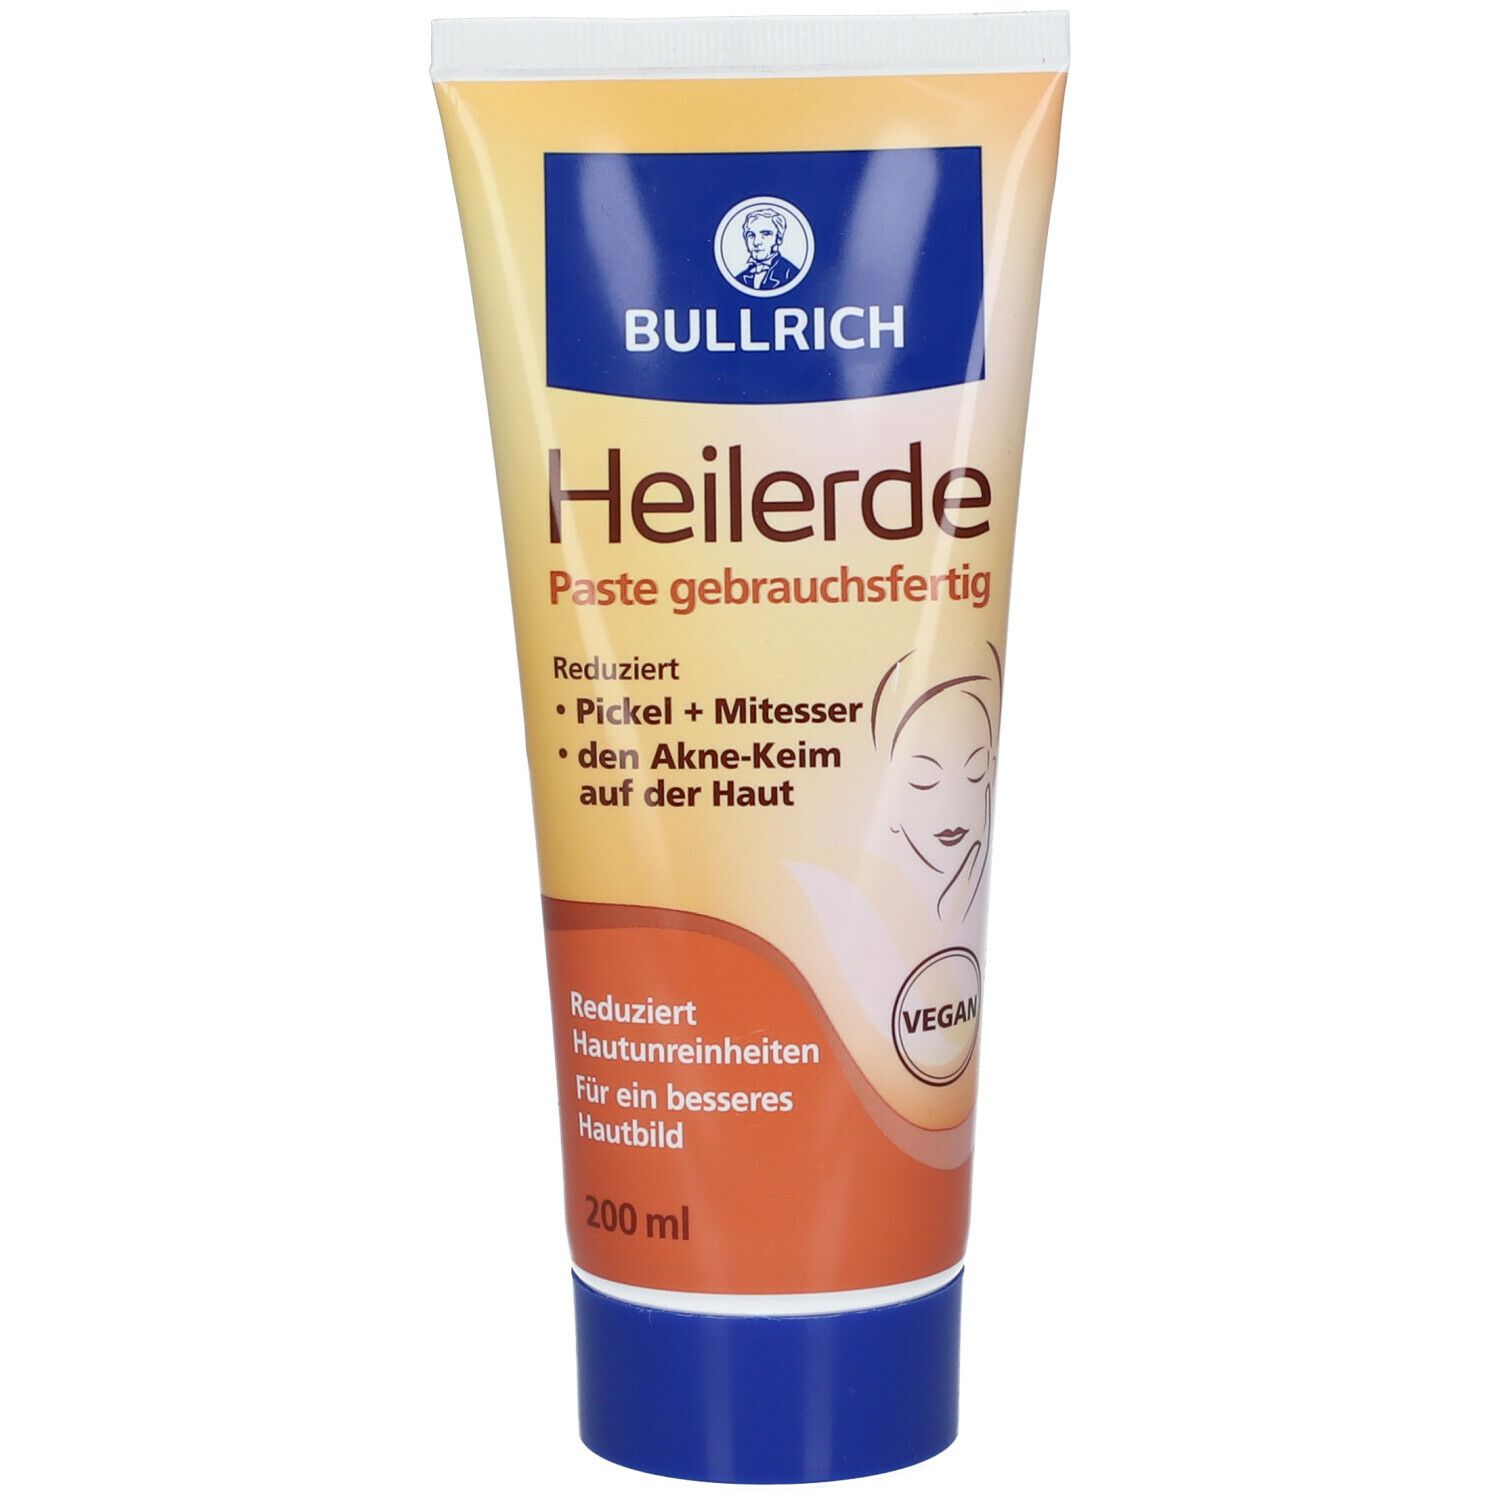 Image of Bullrich Heilerde Paste